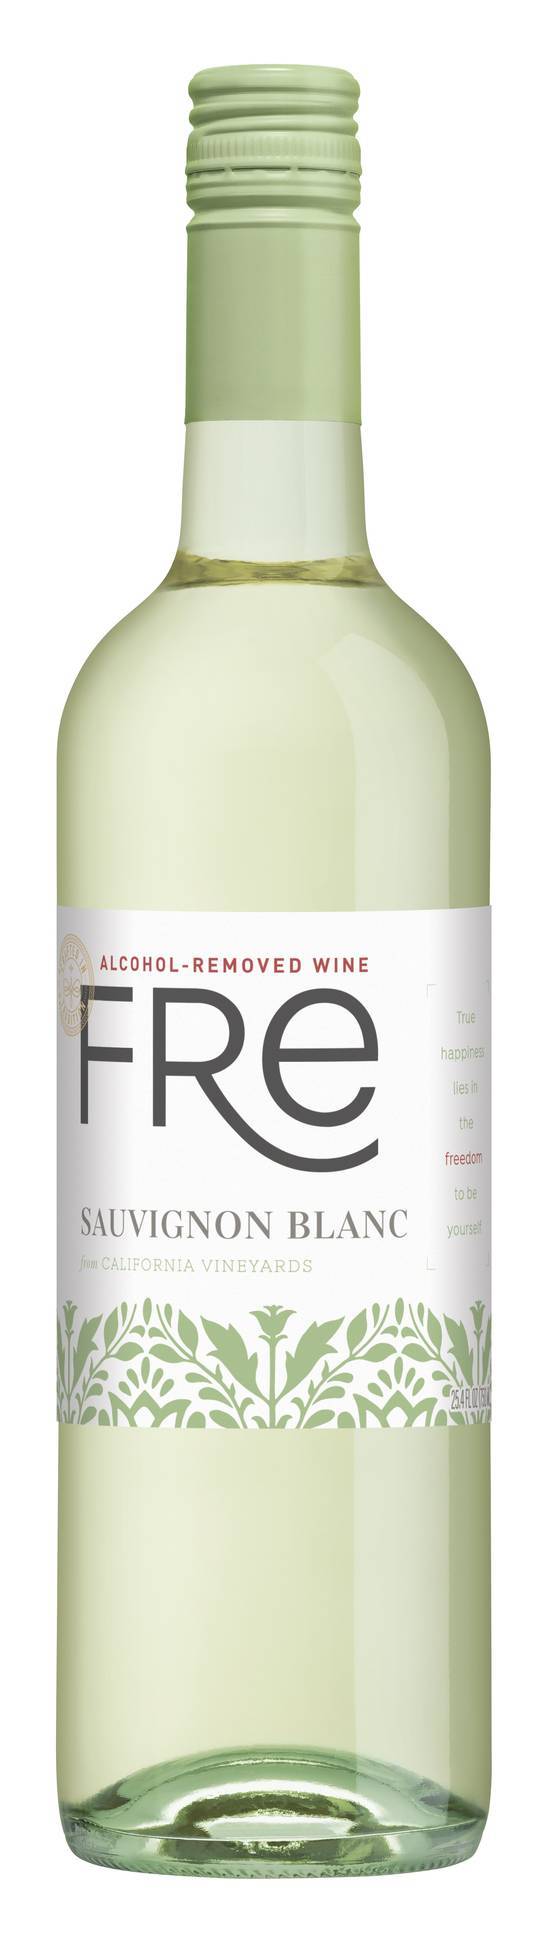 Fre Wines Sauvignon Blanc Wine (750 ml)